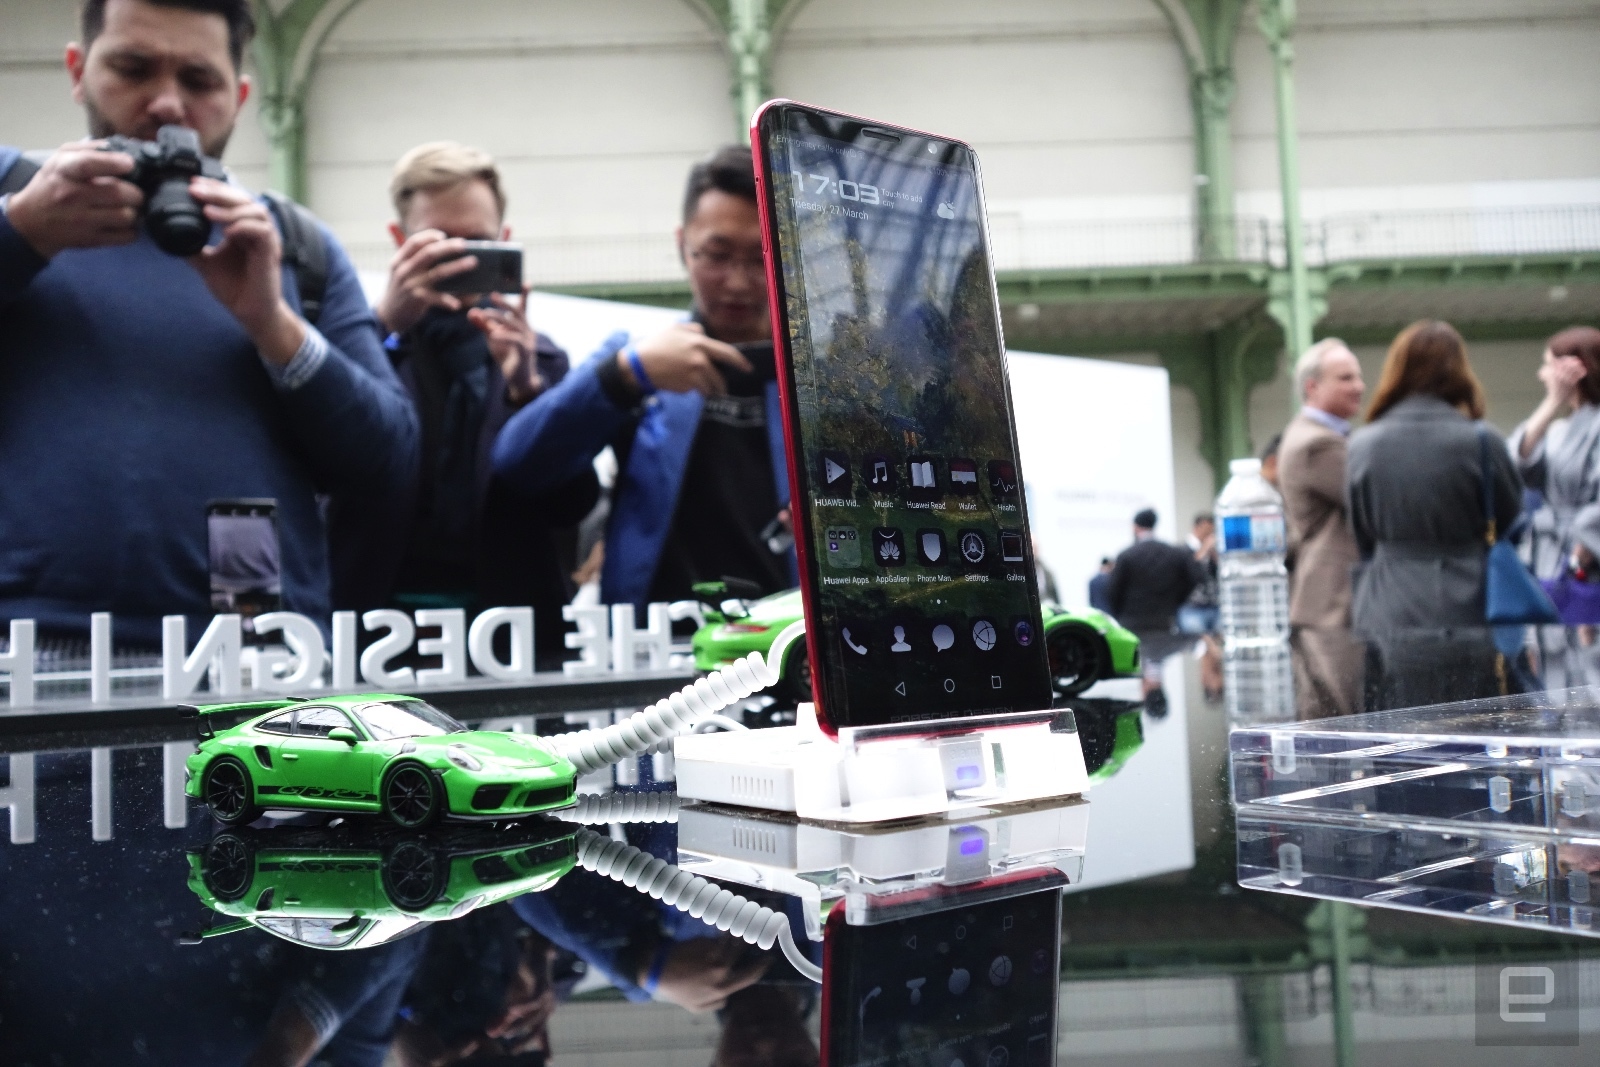 Cận cảnh Huawei Mate RS Porsche Design 60 triệu:
Sang trọng, vân tay kép, không tai thỏ